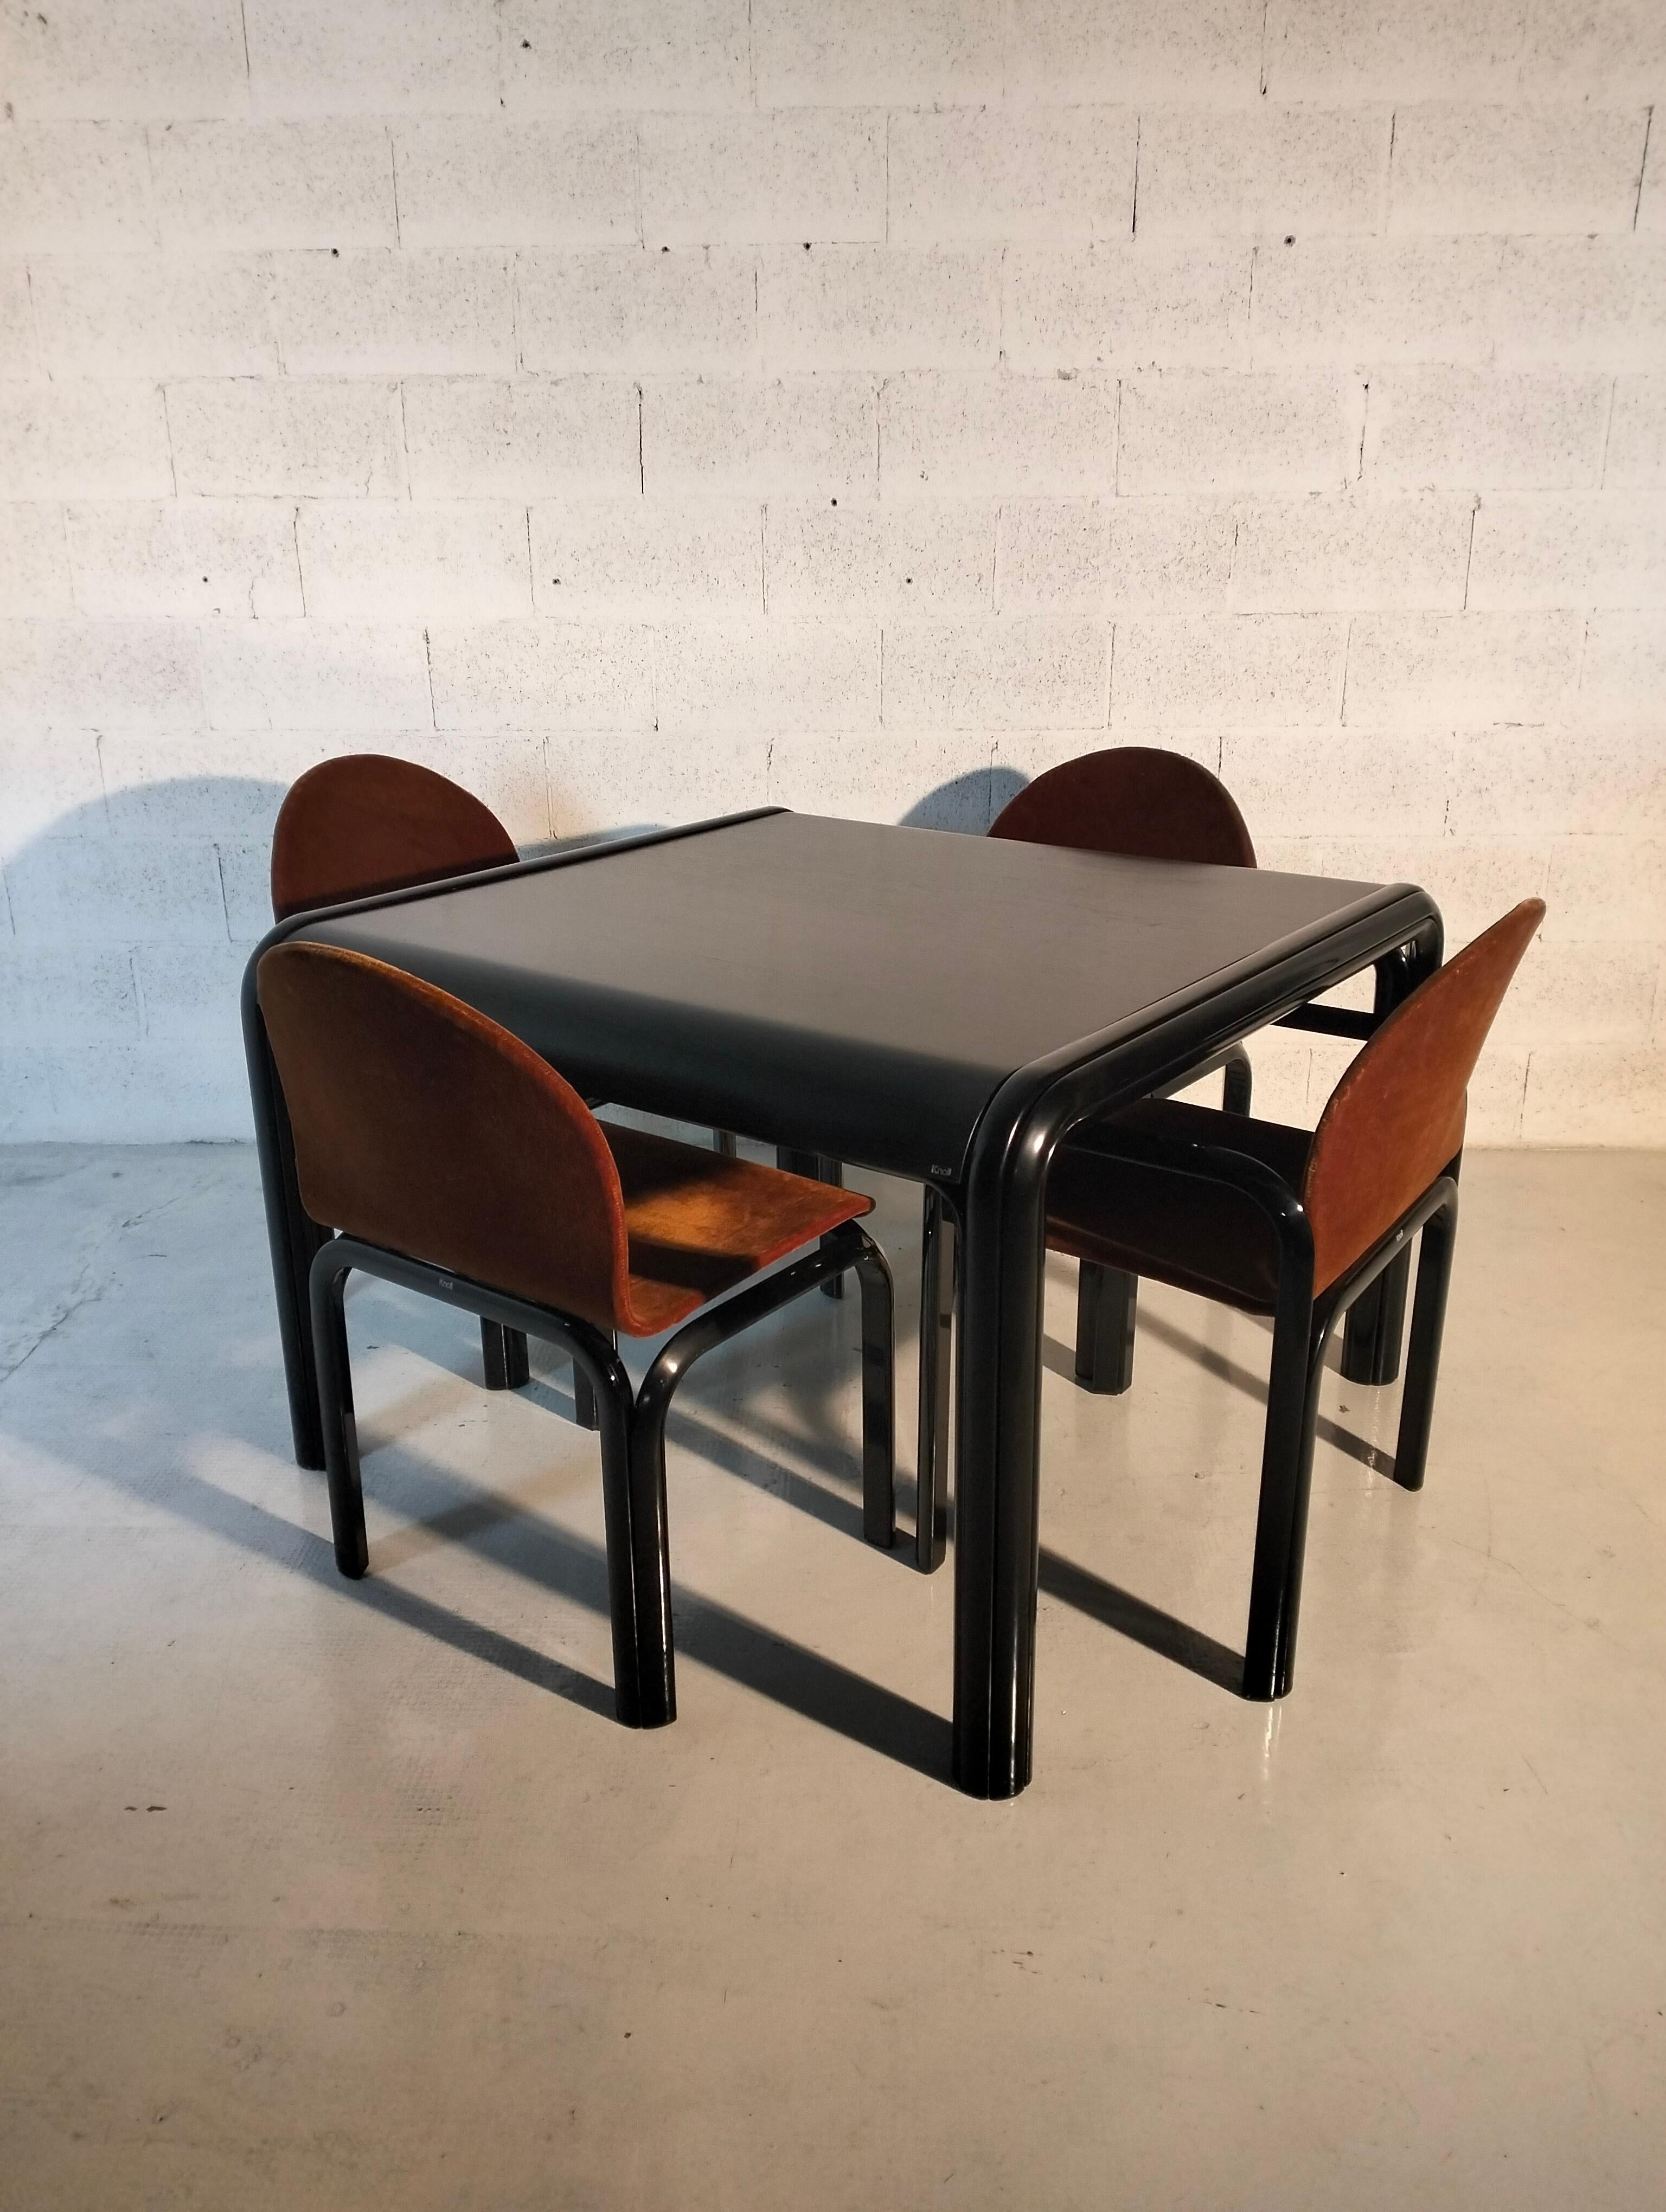 Una mesa de comedor moderna de mediados de siglo y cuatro sillas diseñadas por Gae Aulenti y fabricadas por Knoll. 
Mesa con estructura de acero laminado negro y tablero laminado negro. 
Las sillas con armazón de aluminio extruido negro y tela